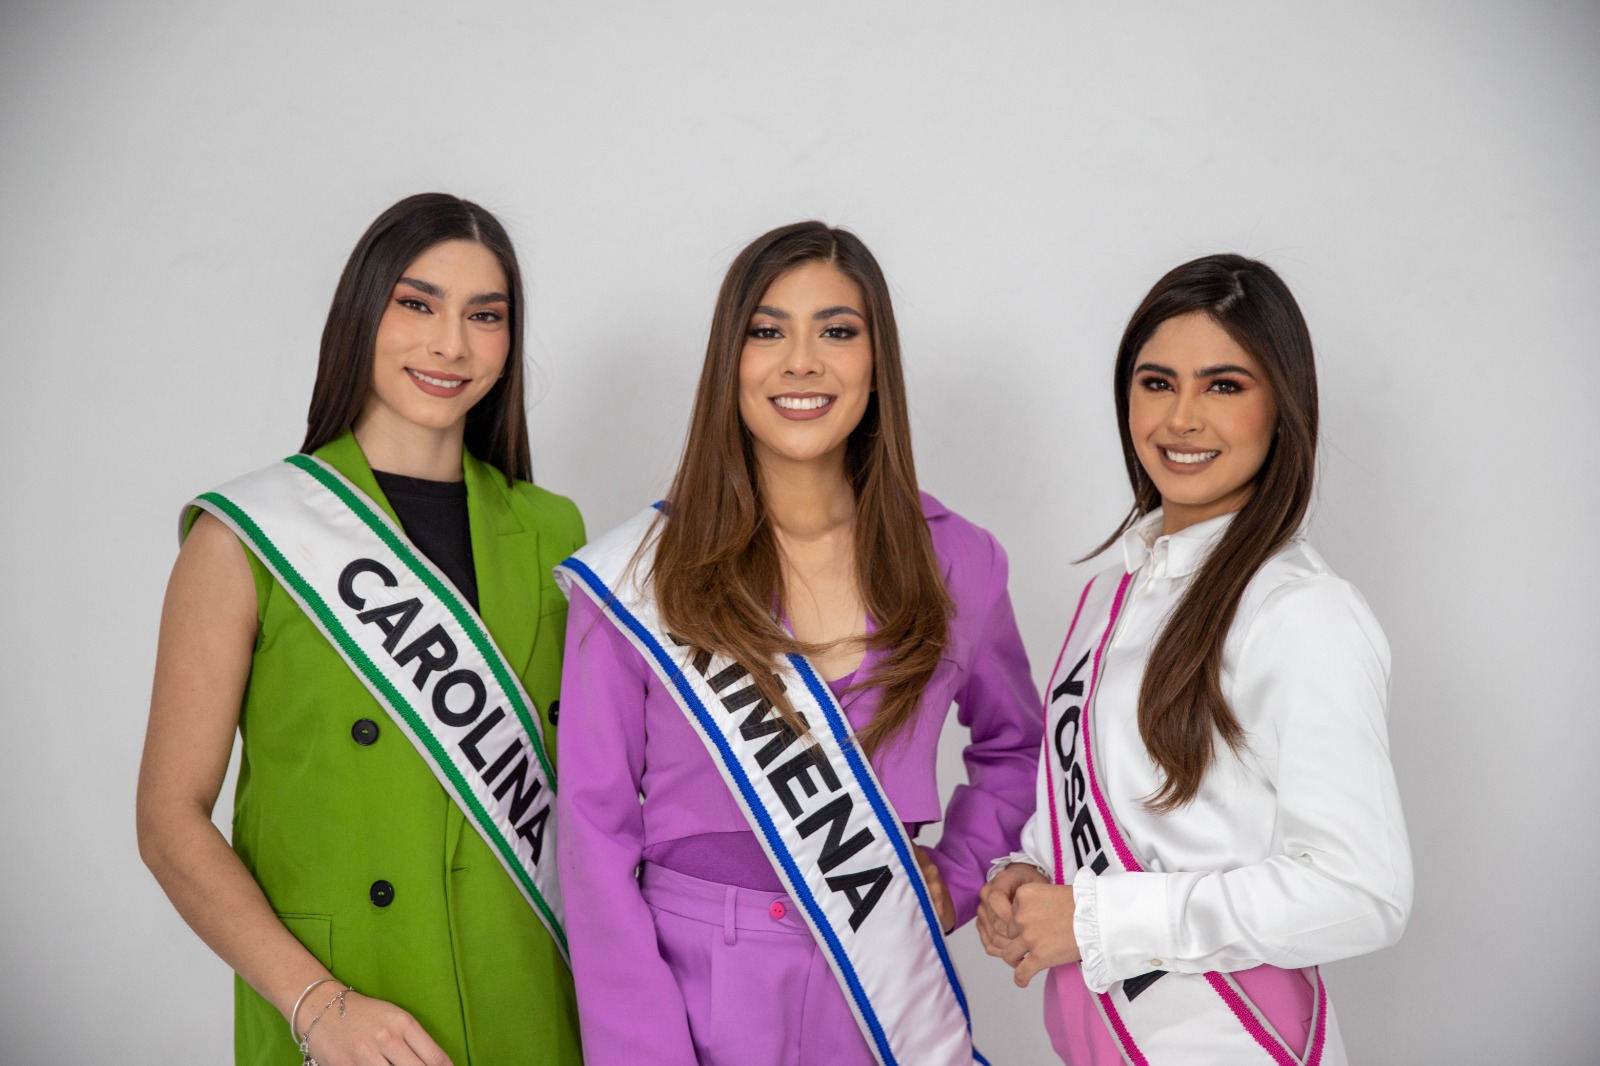 Caro, YoselIn y Ximena son las candidatas a reina de la FNSM